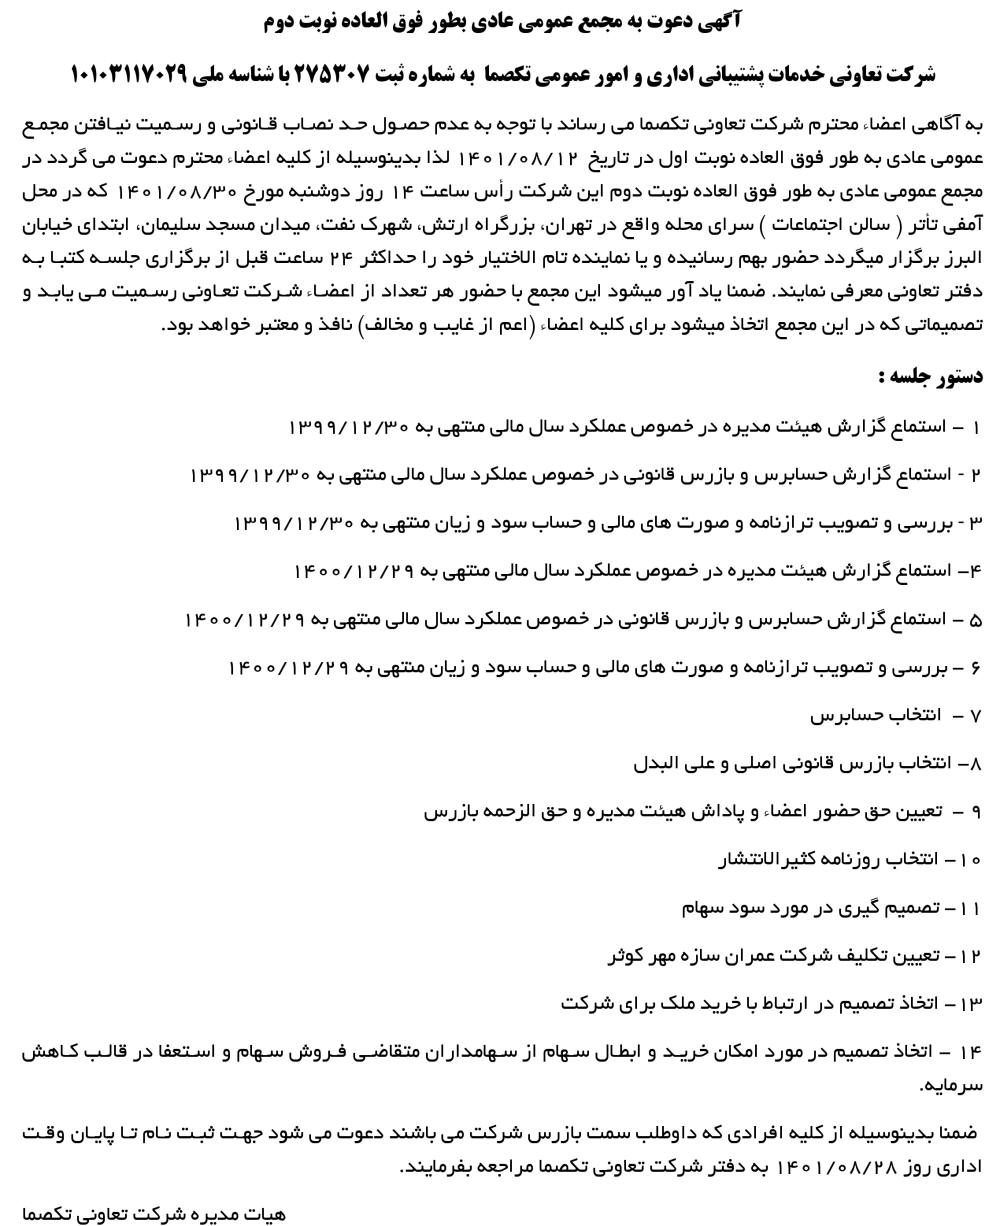 آگهی مجمع نوبت دوم تعاونی تکصما چاپ شده در روزنامه ابرار اقتصادی